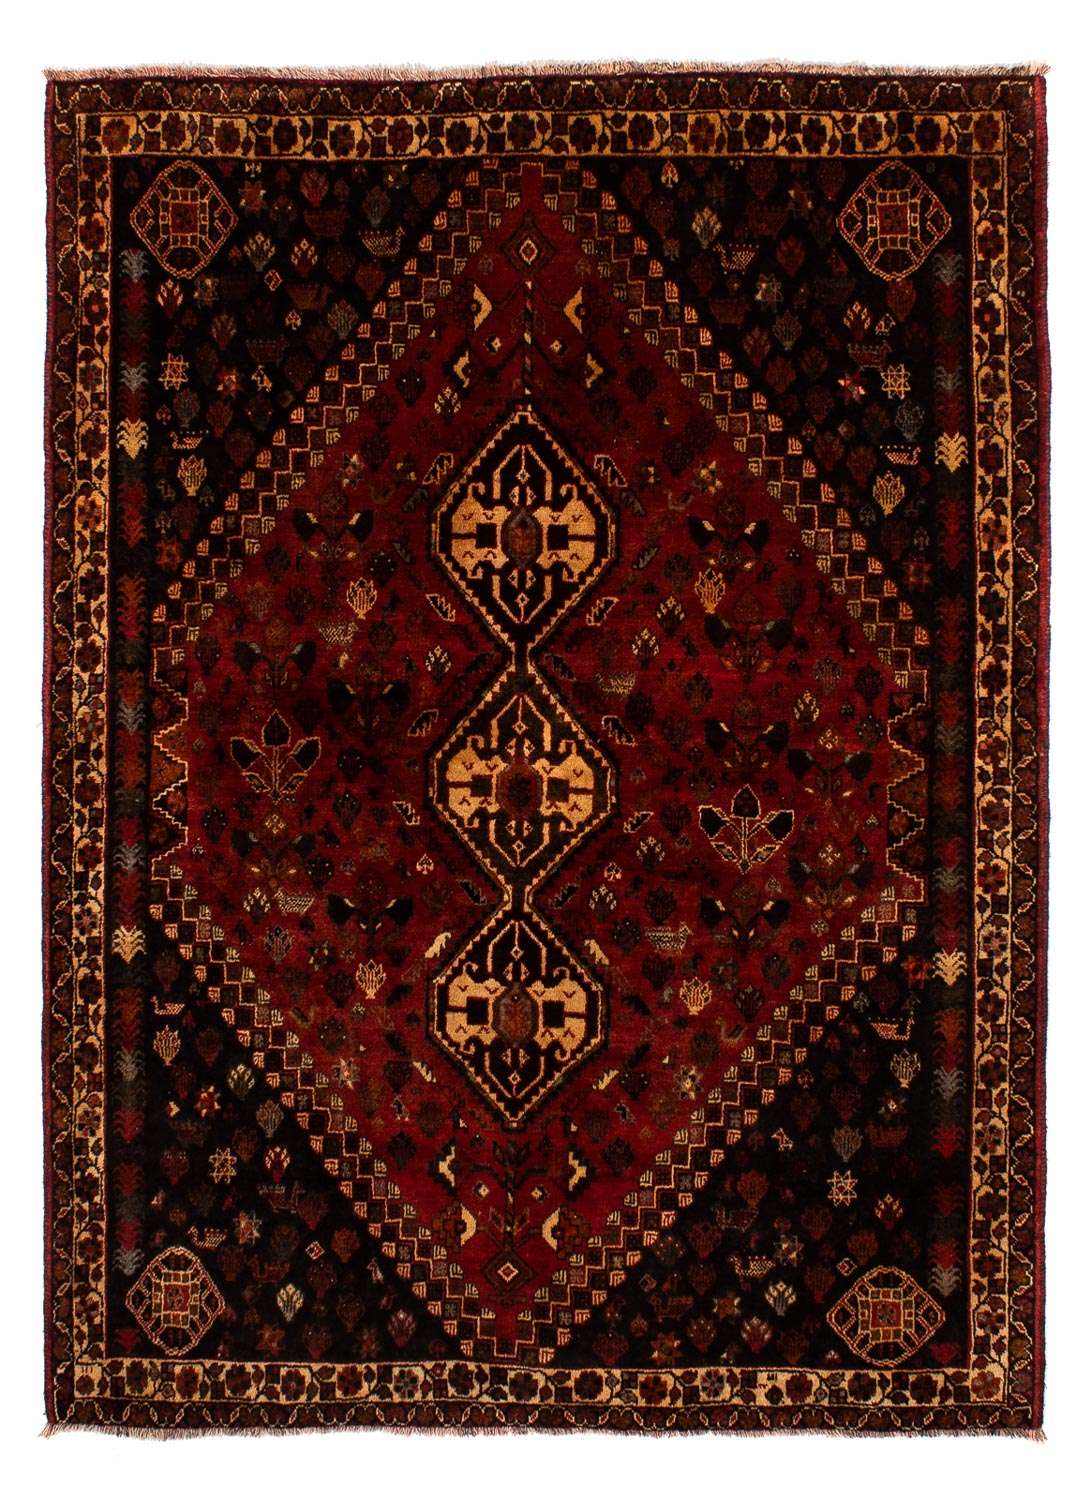 Tapete Persa - Nomadic - 250 x 185 cm - vermelho escuro